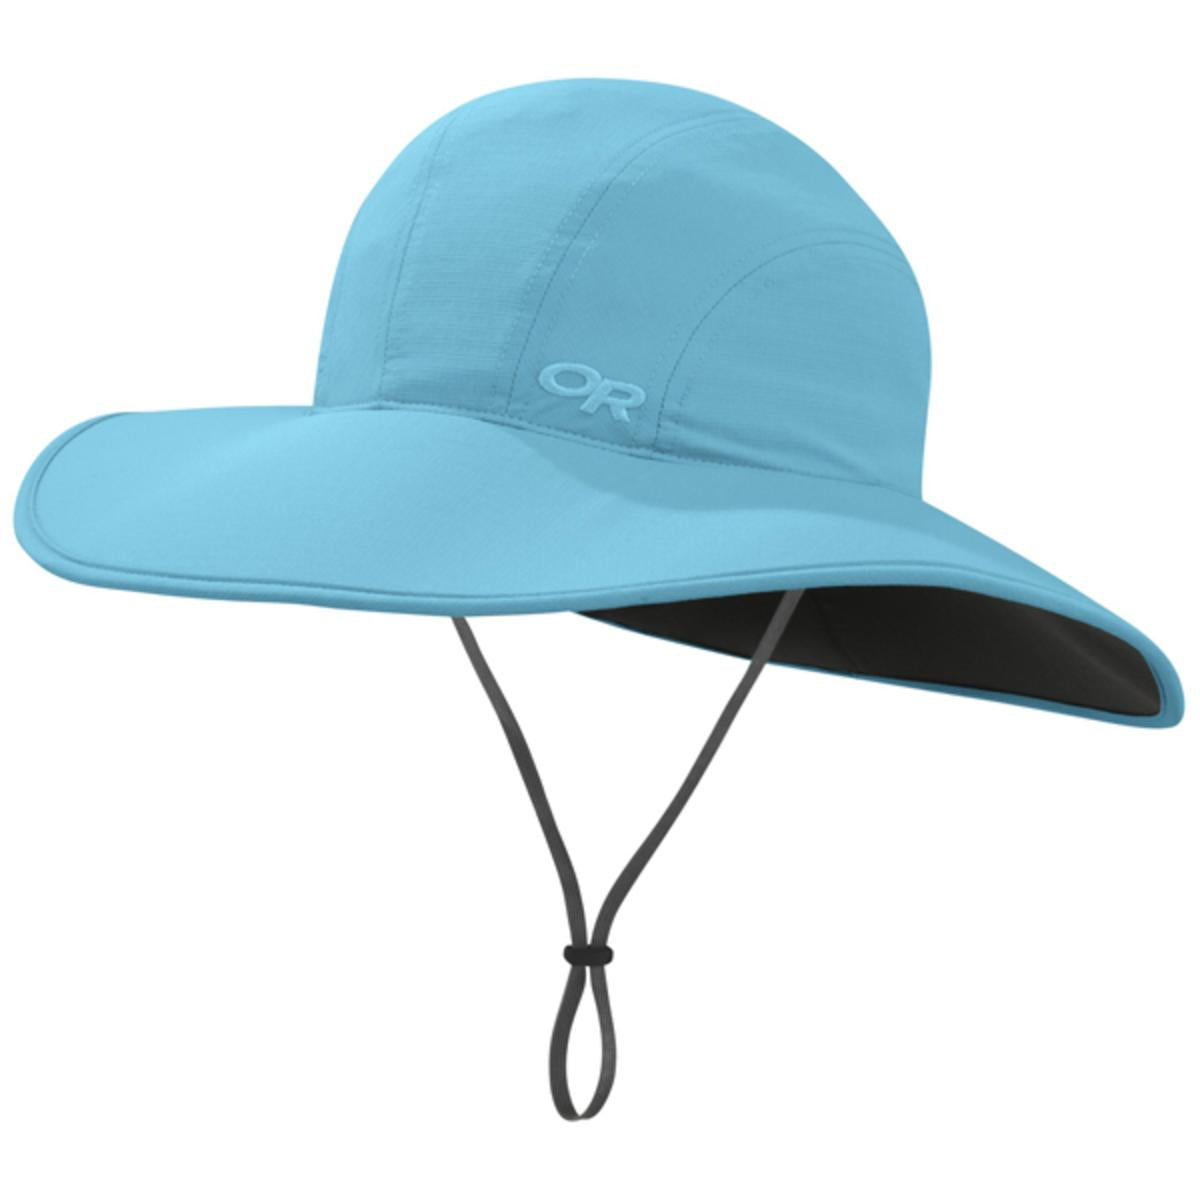 Outdoor Research Women's Oasis Sun Sombrero Hat